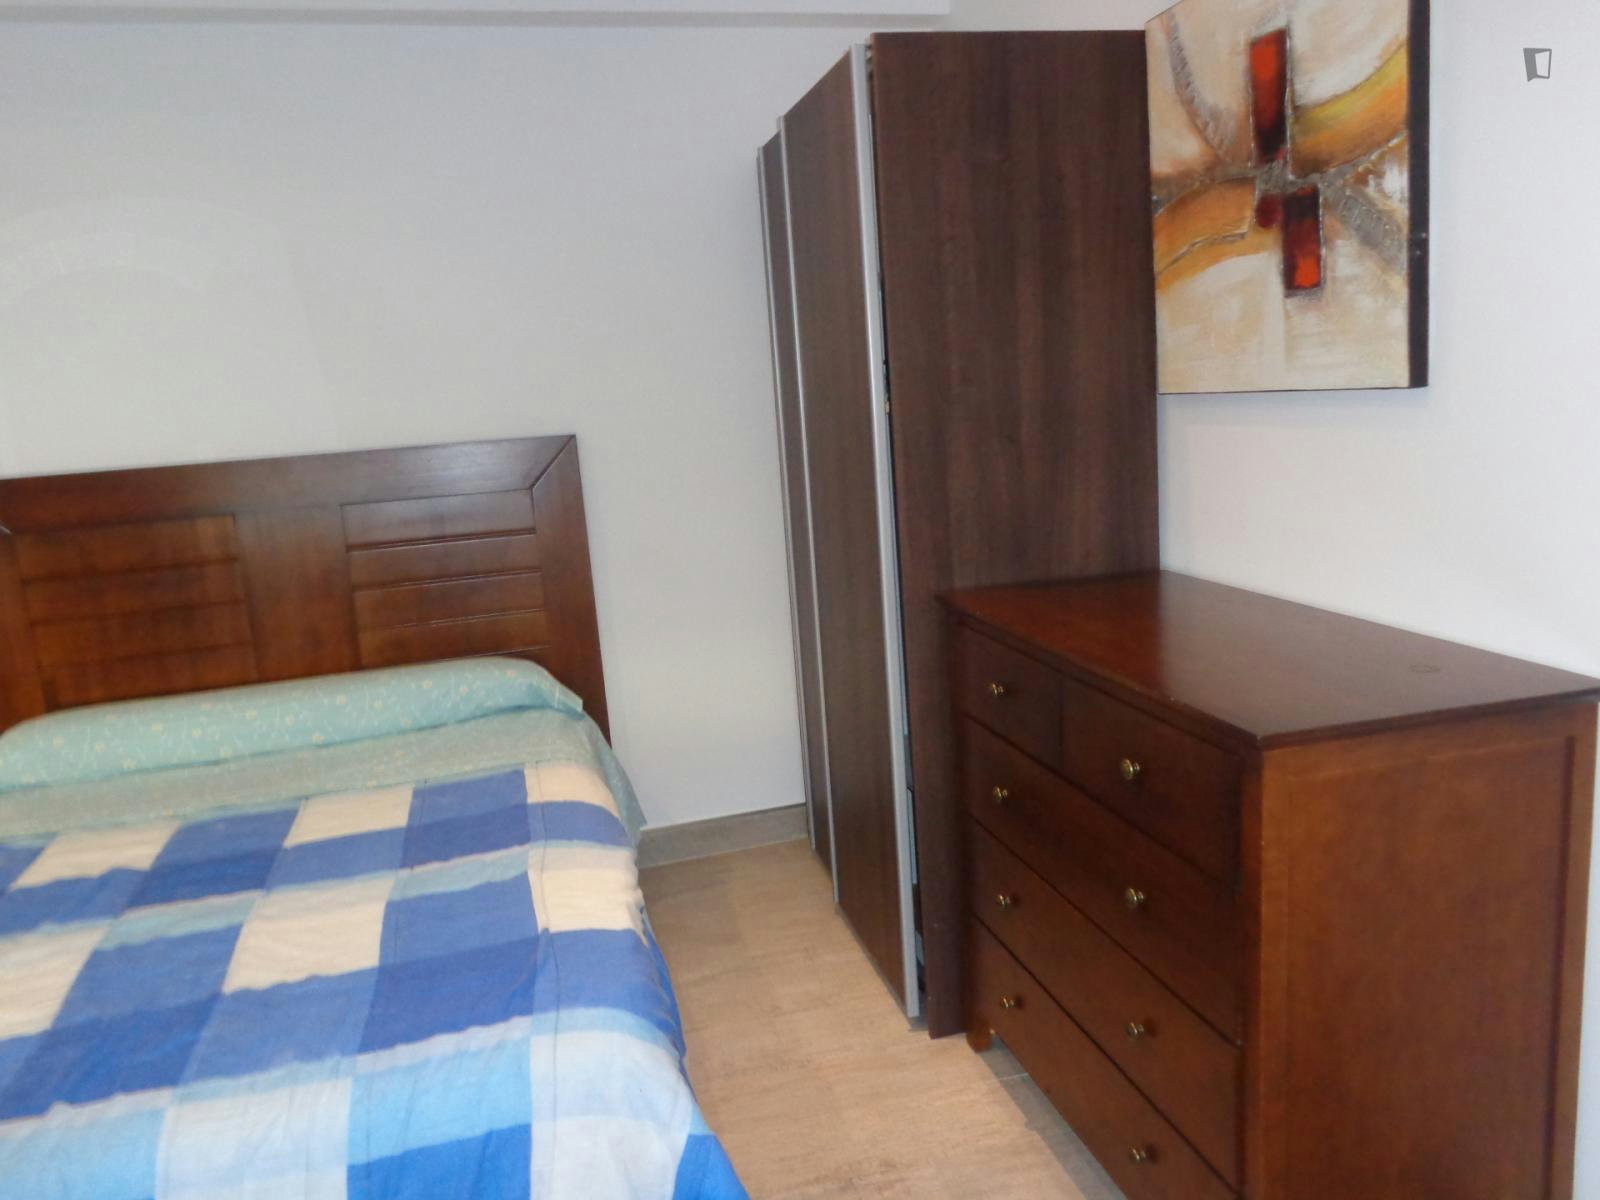 Comfortable single bedroom close to Universidad de Cantabria